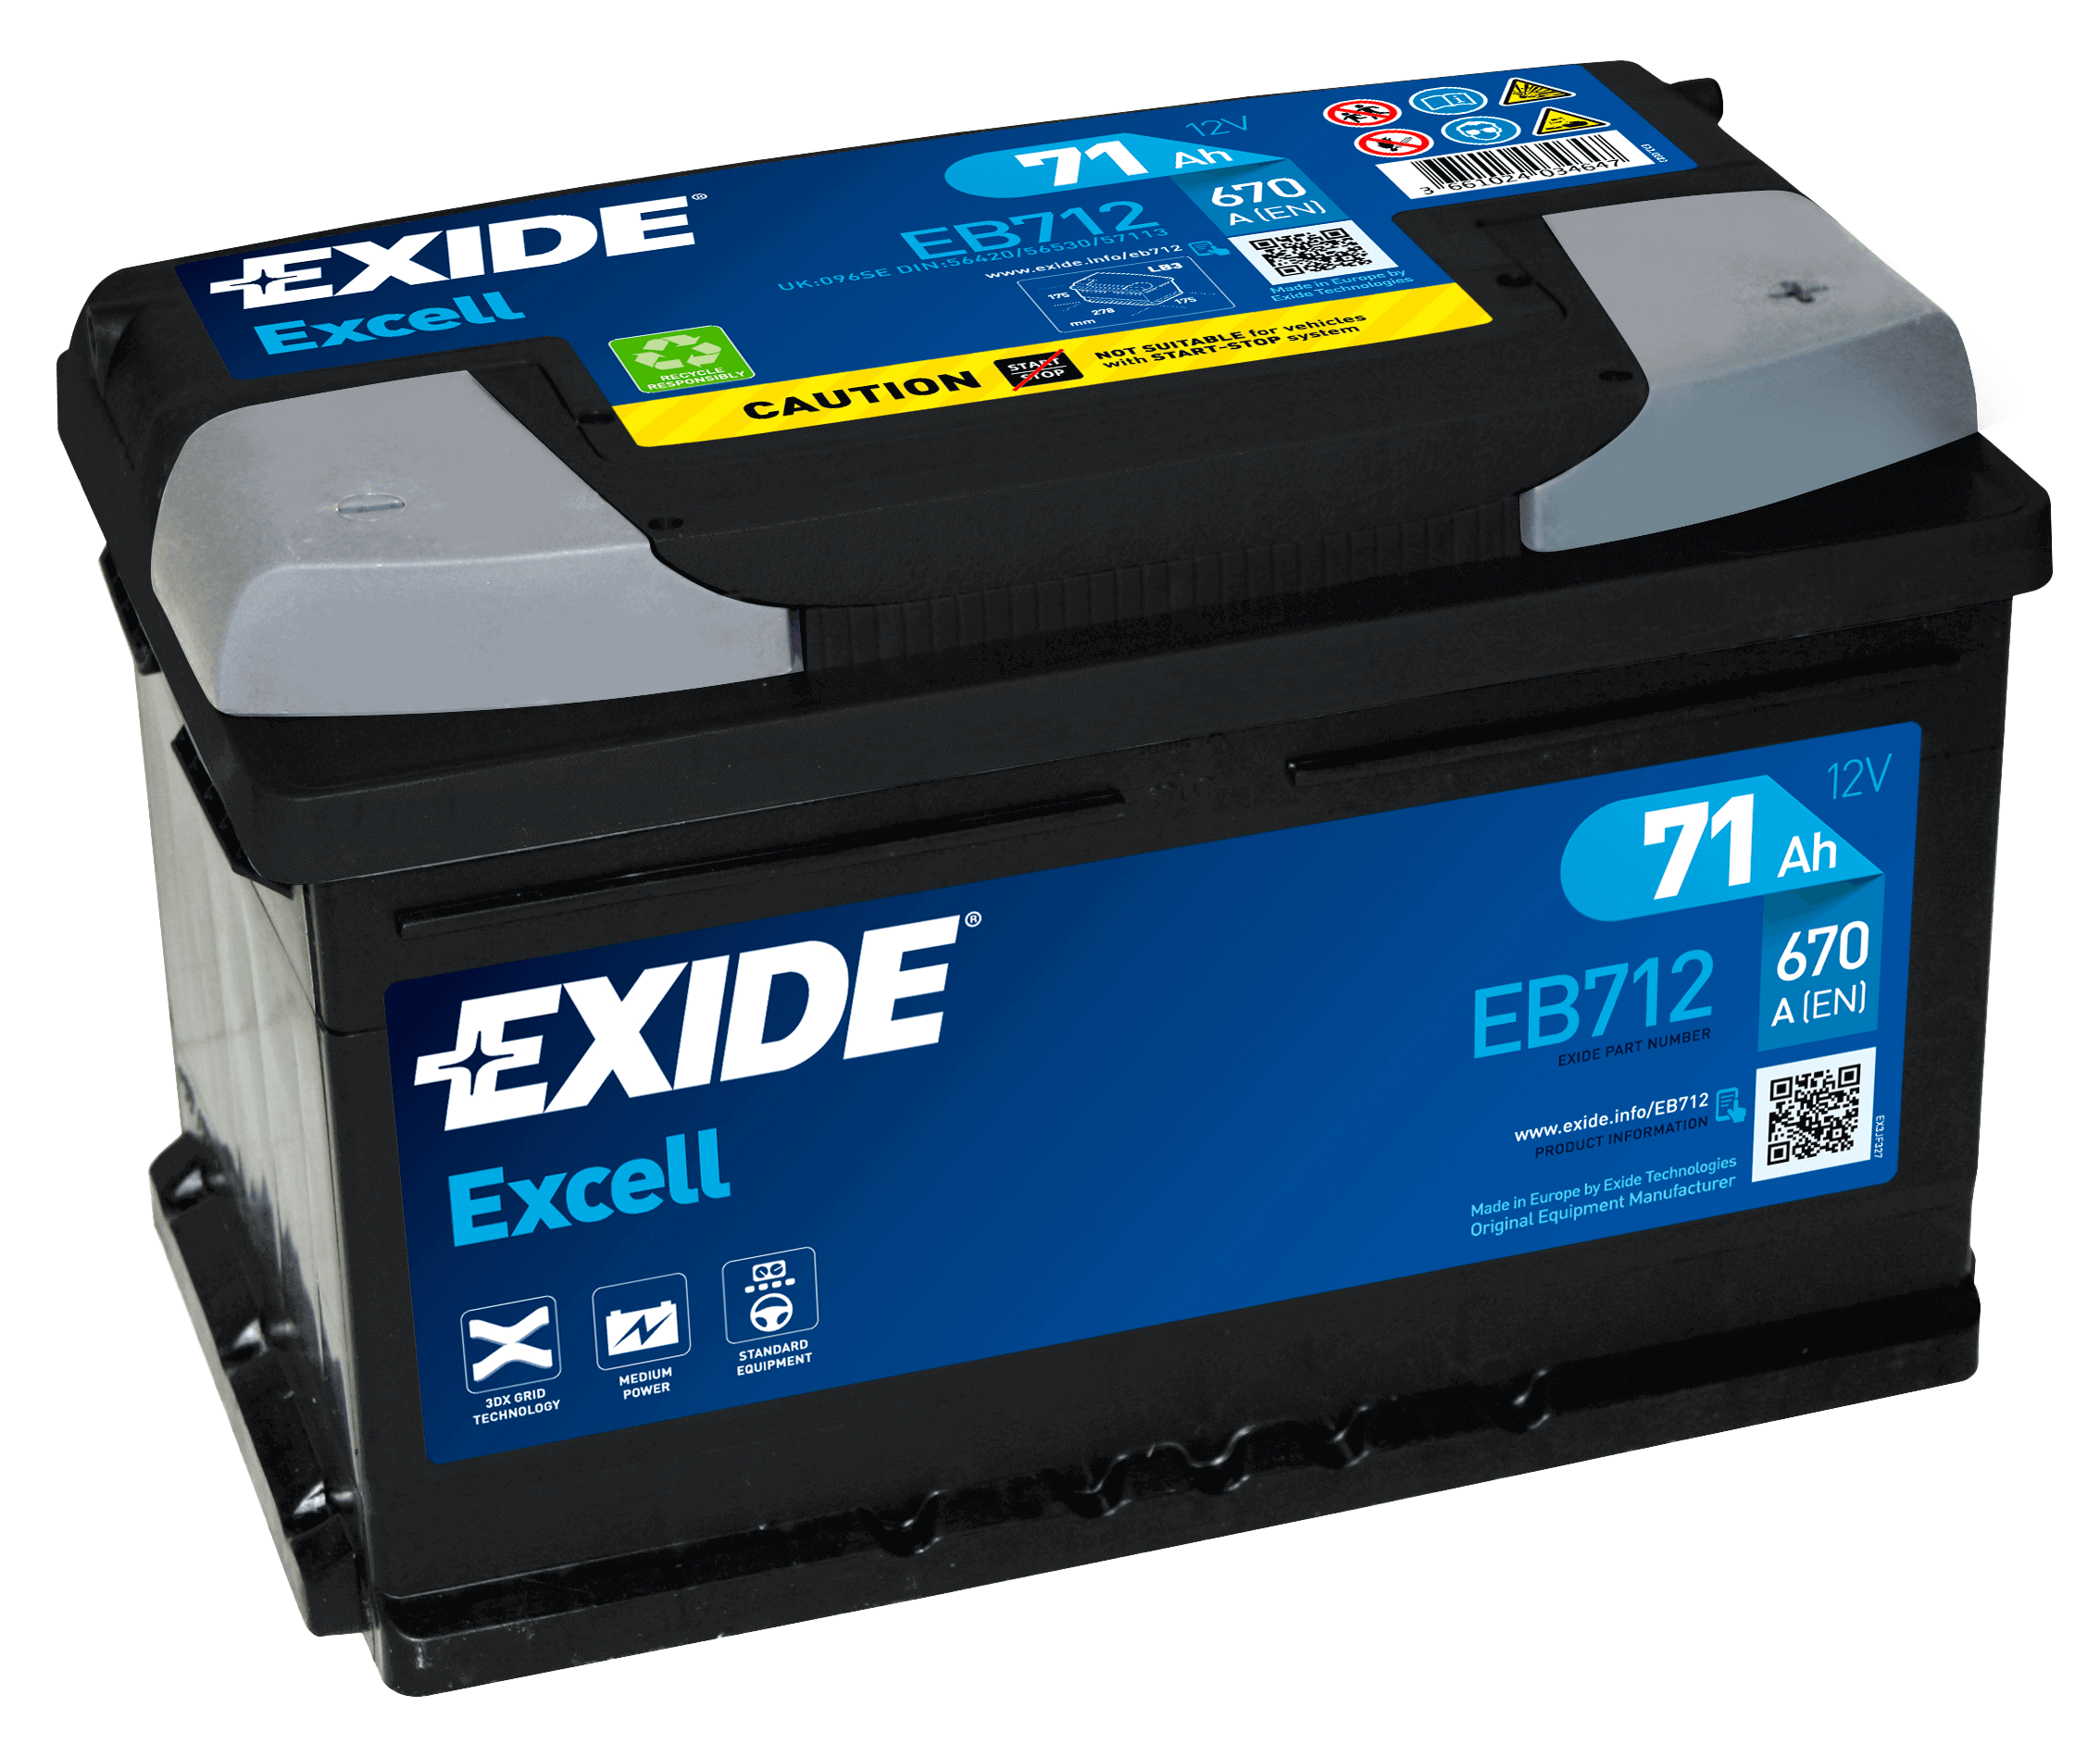 Die Exide Autobatterien: Vorteile und Nachteile im kurzen Überblick